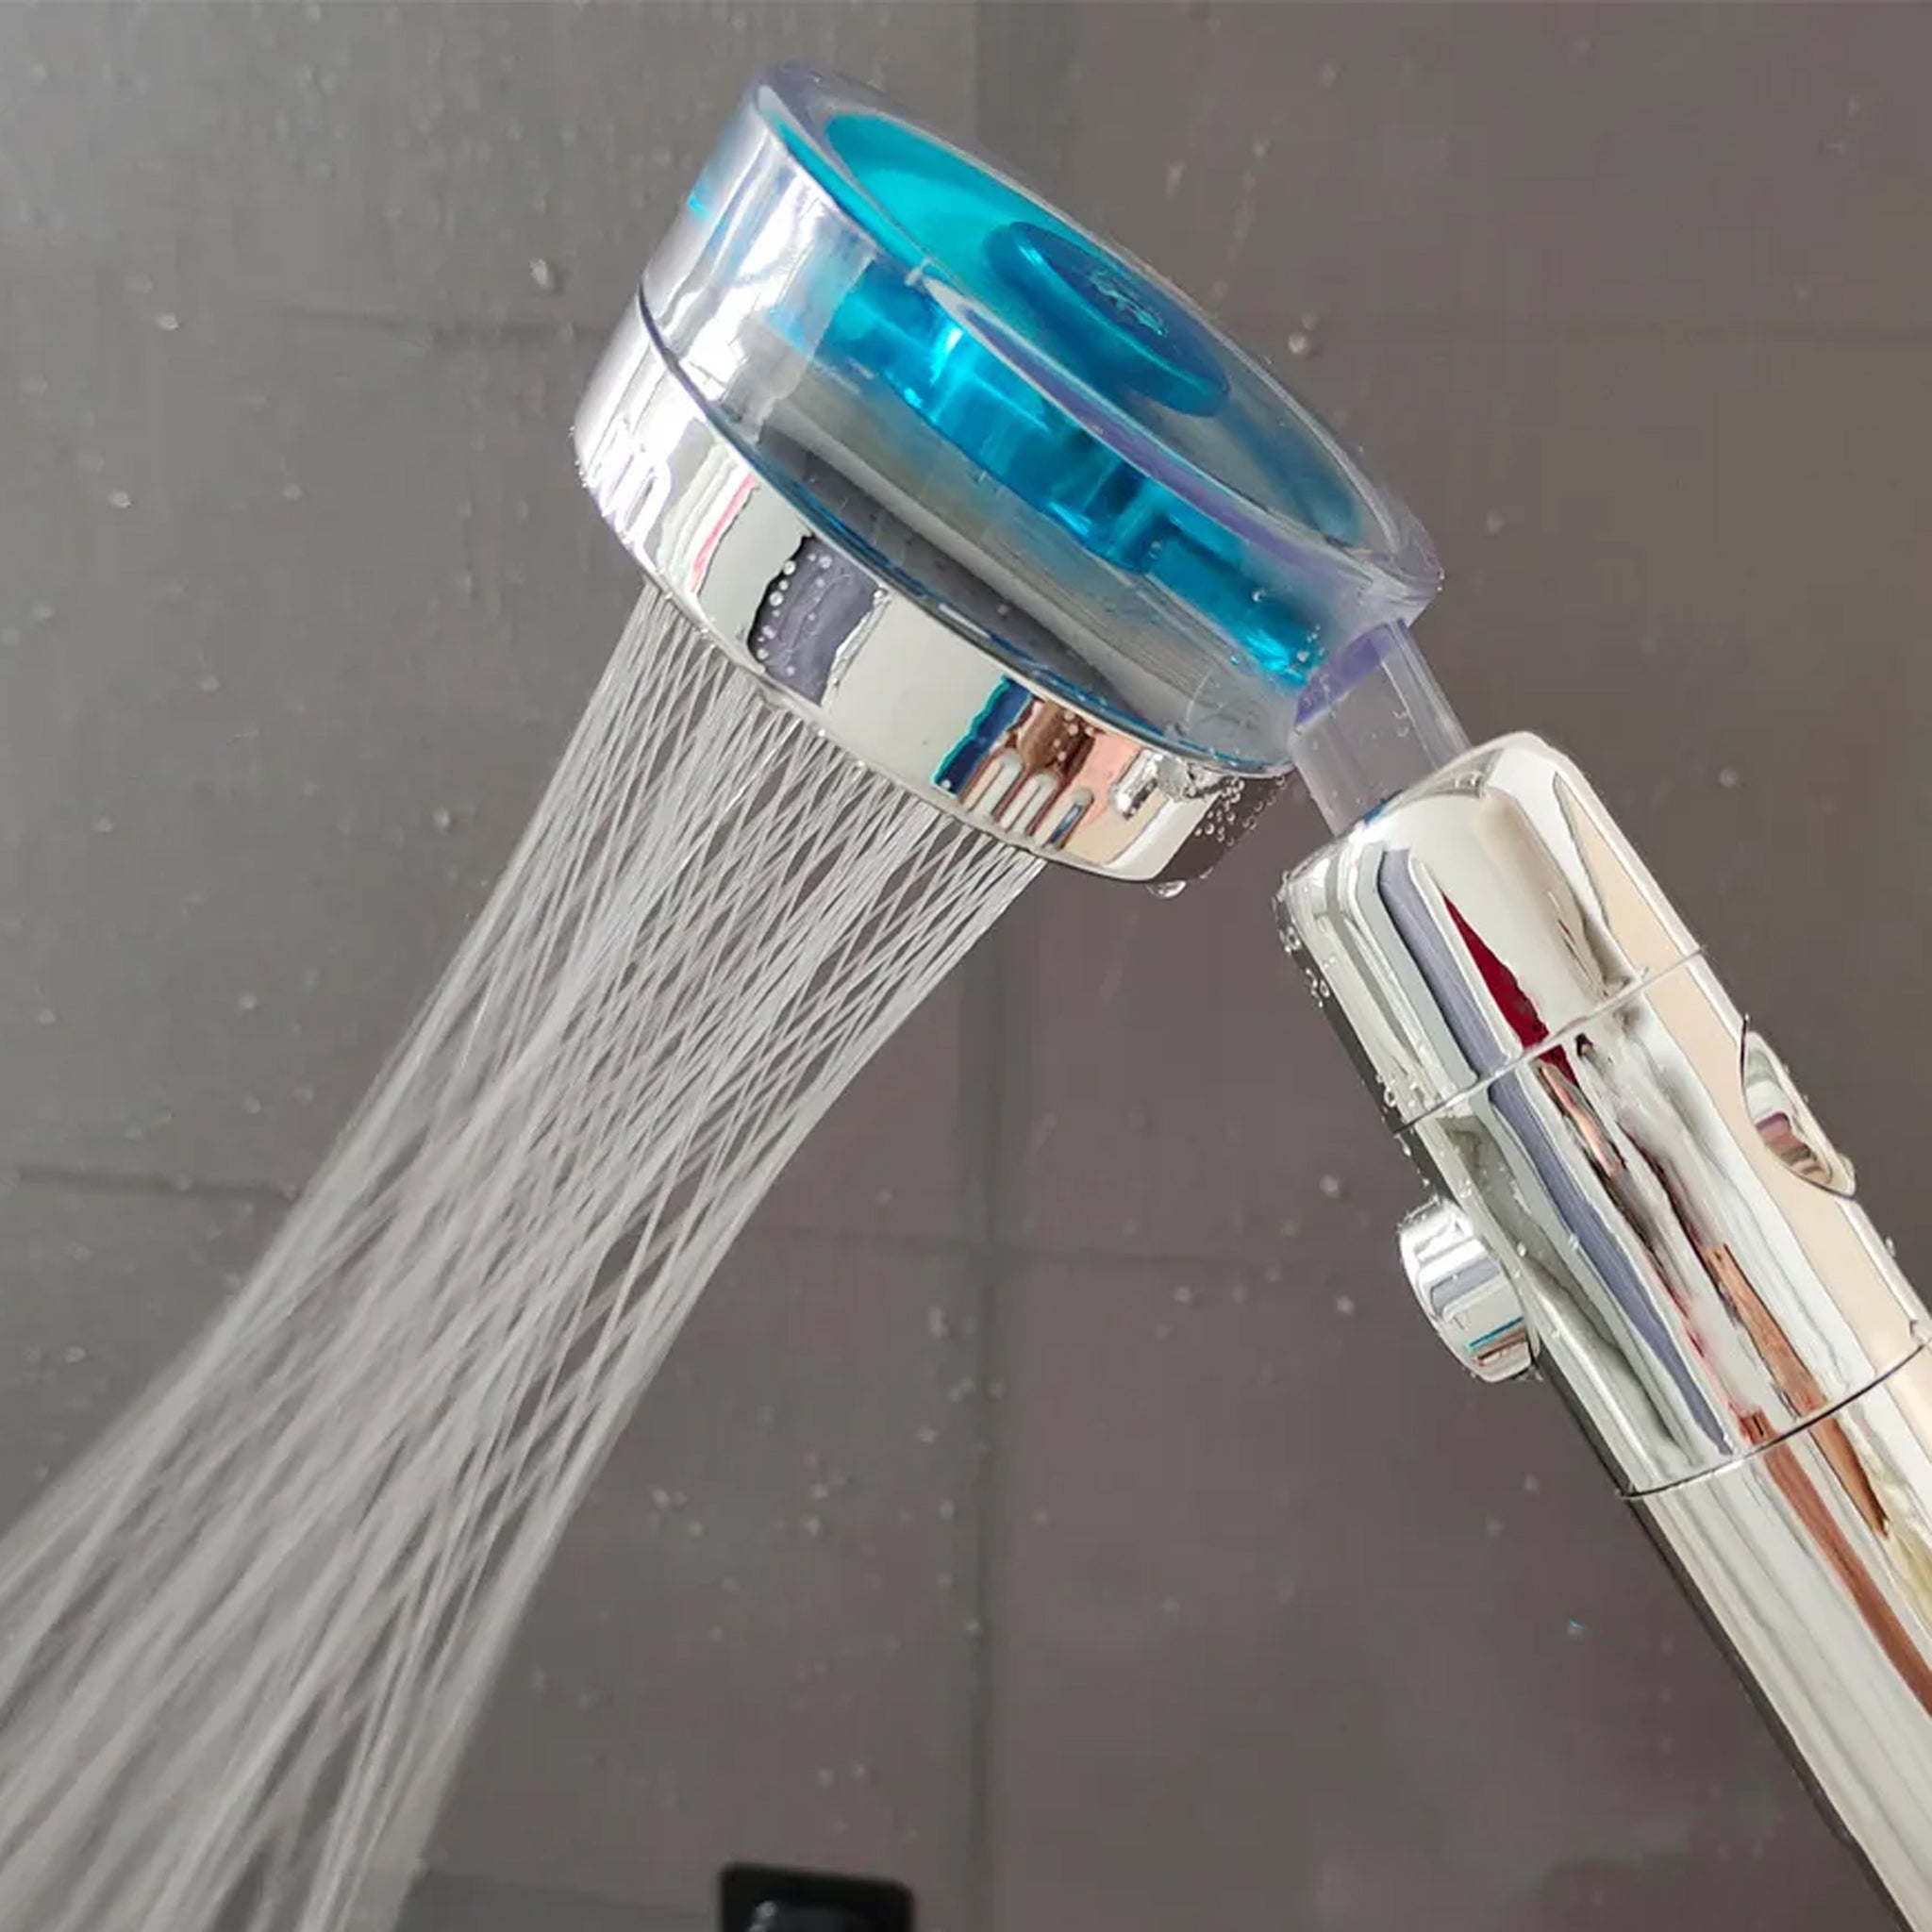 Gelin soffione e filtro doccia ad alta pressione - Tiscali Shopping